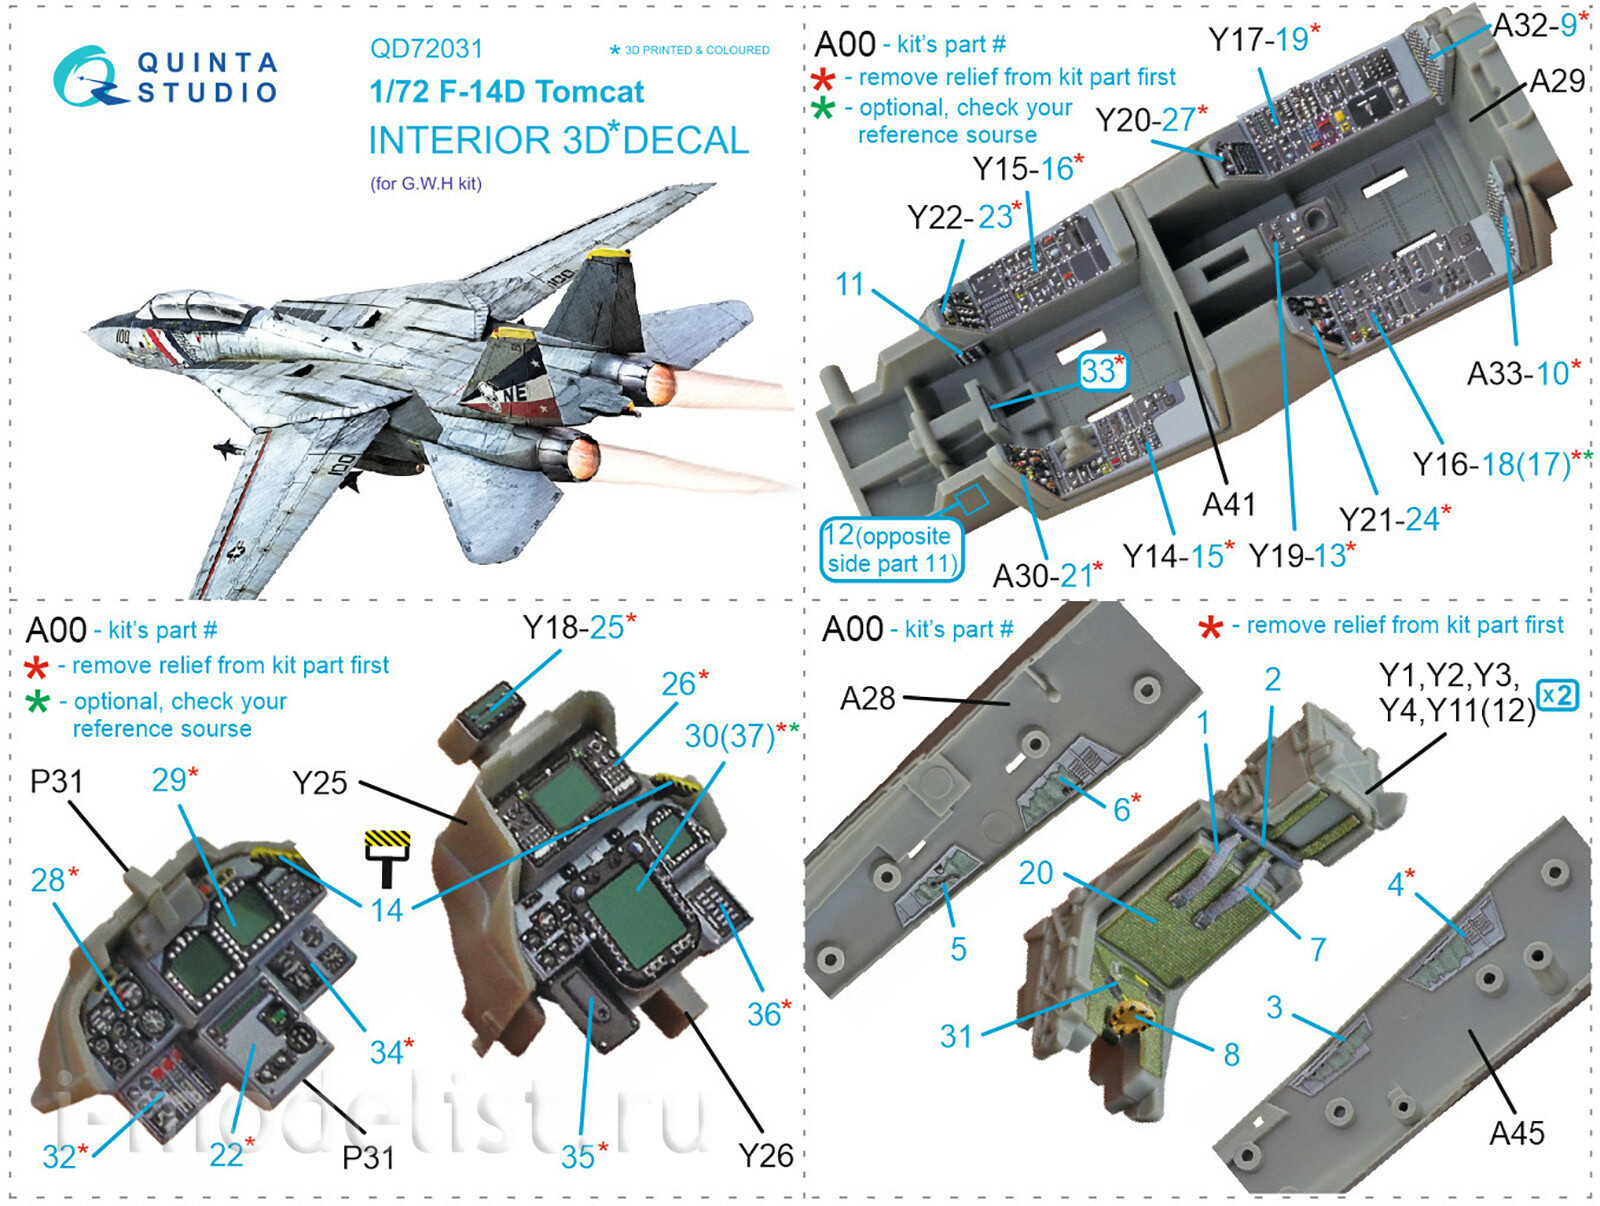 QD72031 Quinta Studio 1/72 3D Декали интерьера кабины F-14D (GWH)